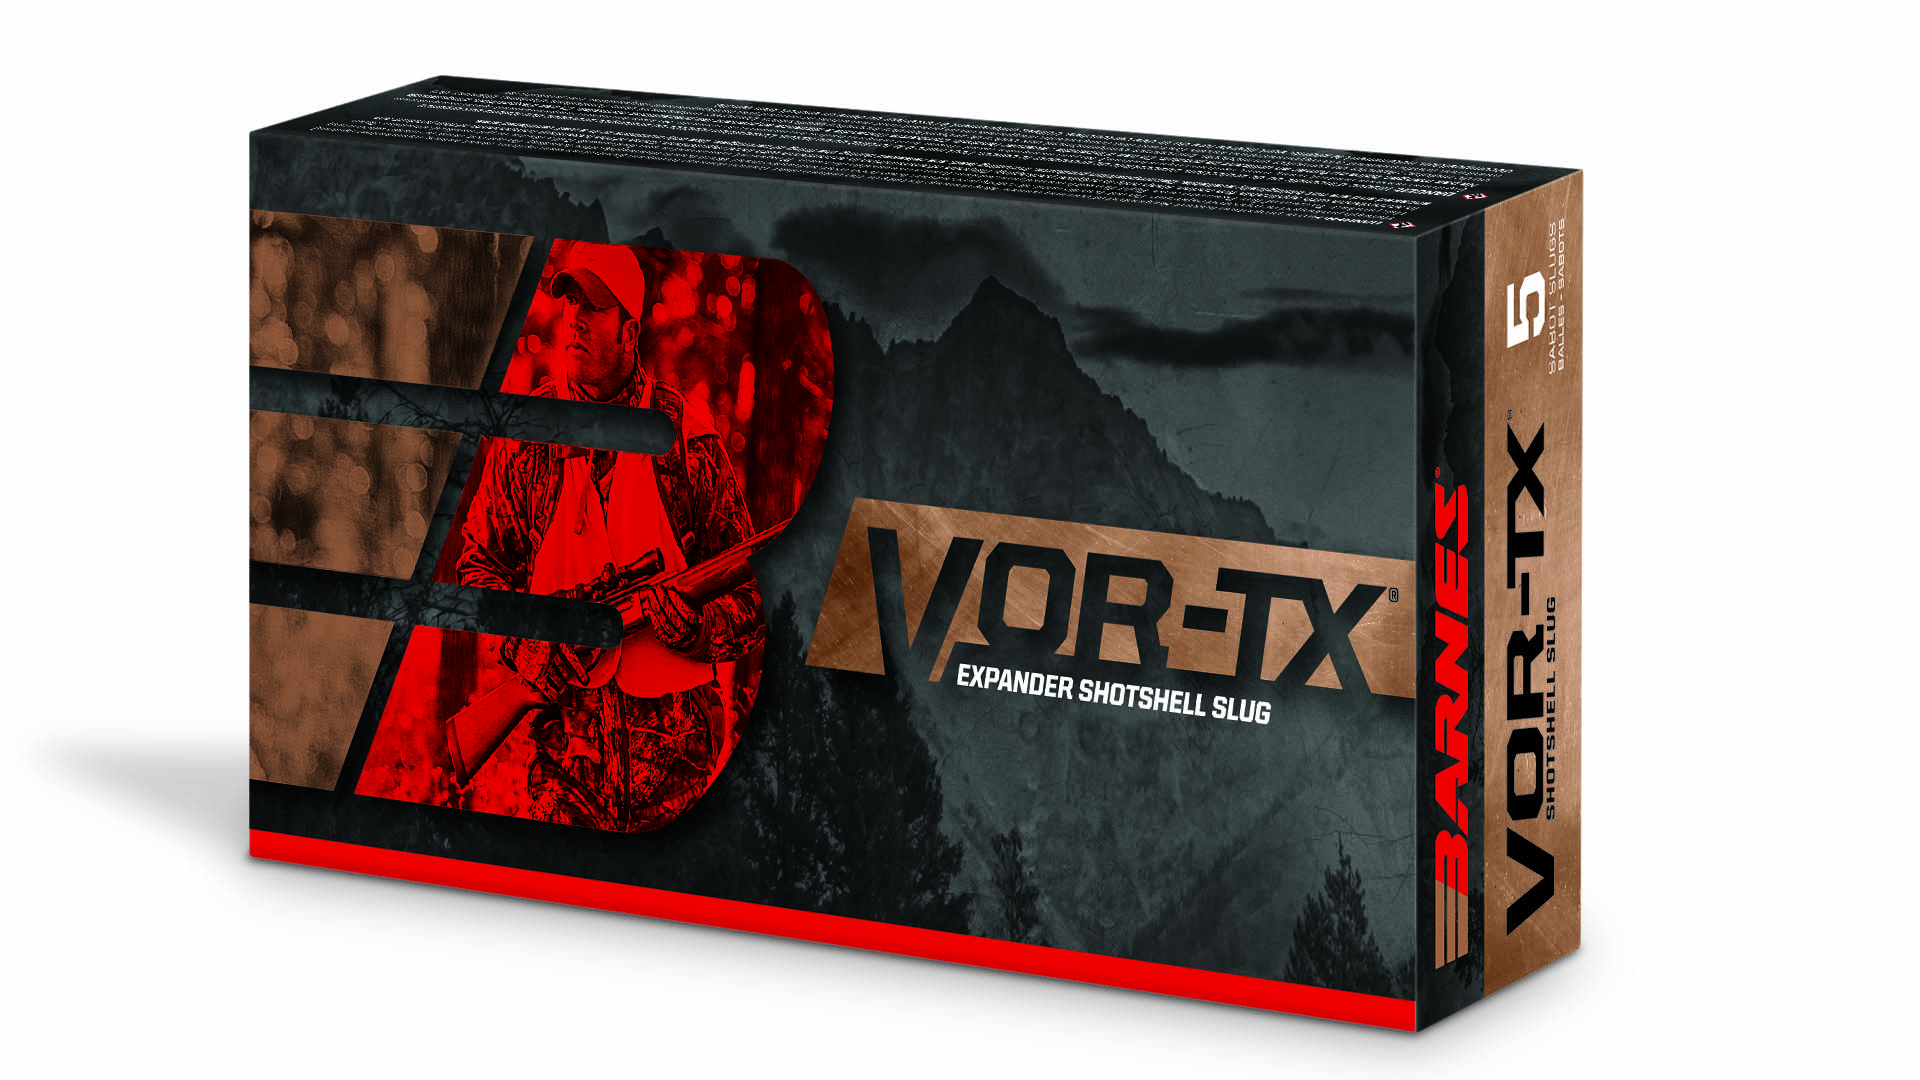 La rinnovata confezione della cartuccia Vor-Tx Expander Shotshell di Barnes